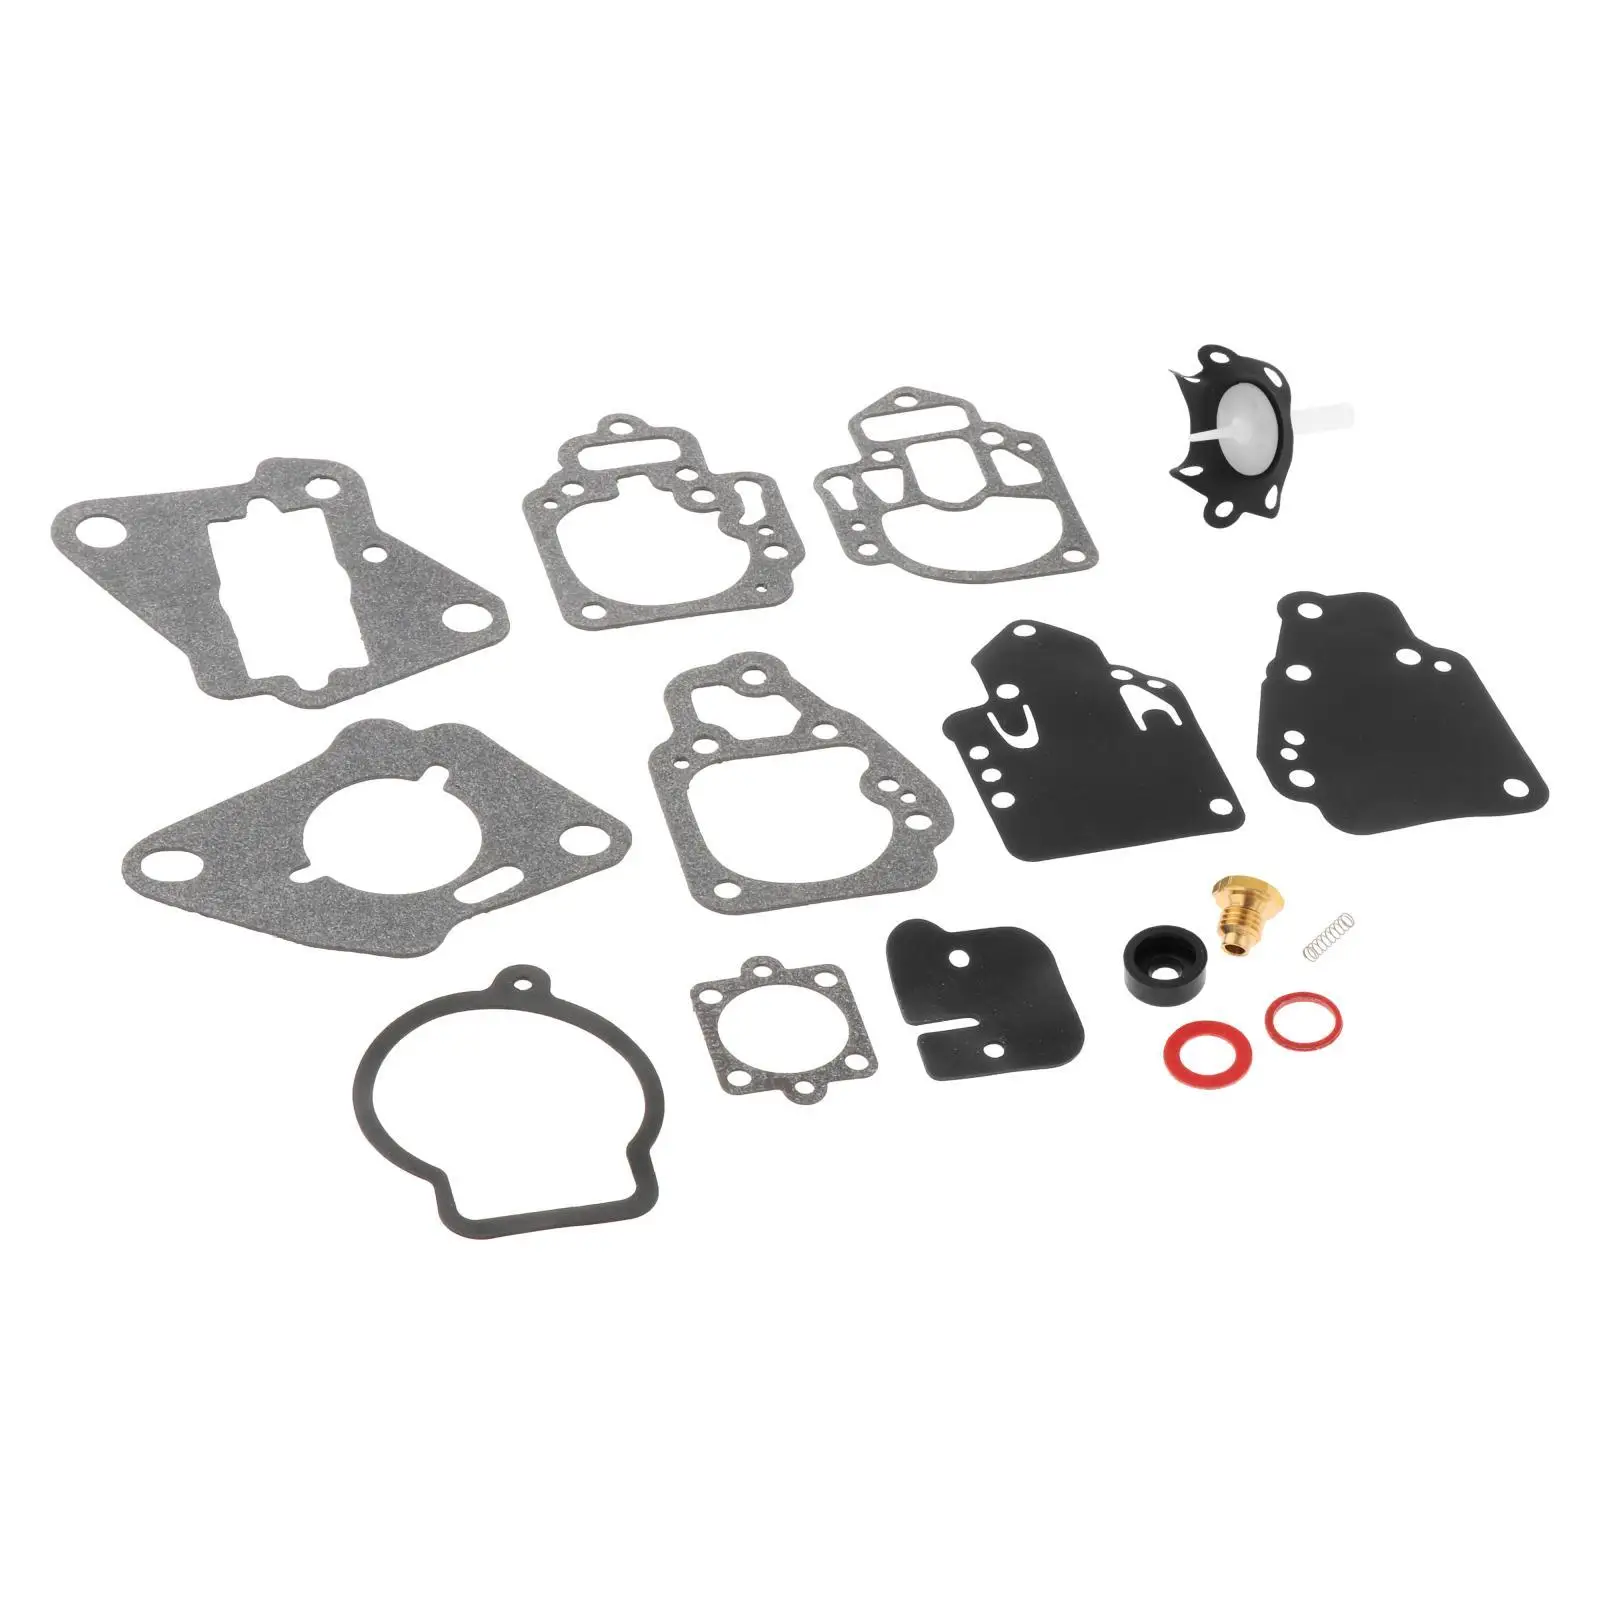 Carburetor Rebuild Kit 1395-9761-1 Direct Replaces Carburetor Gaskets Kit for Mercury Mariner 15 18 20 25 HP Premium